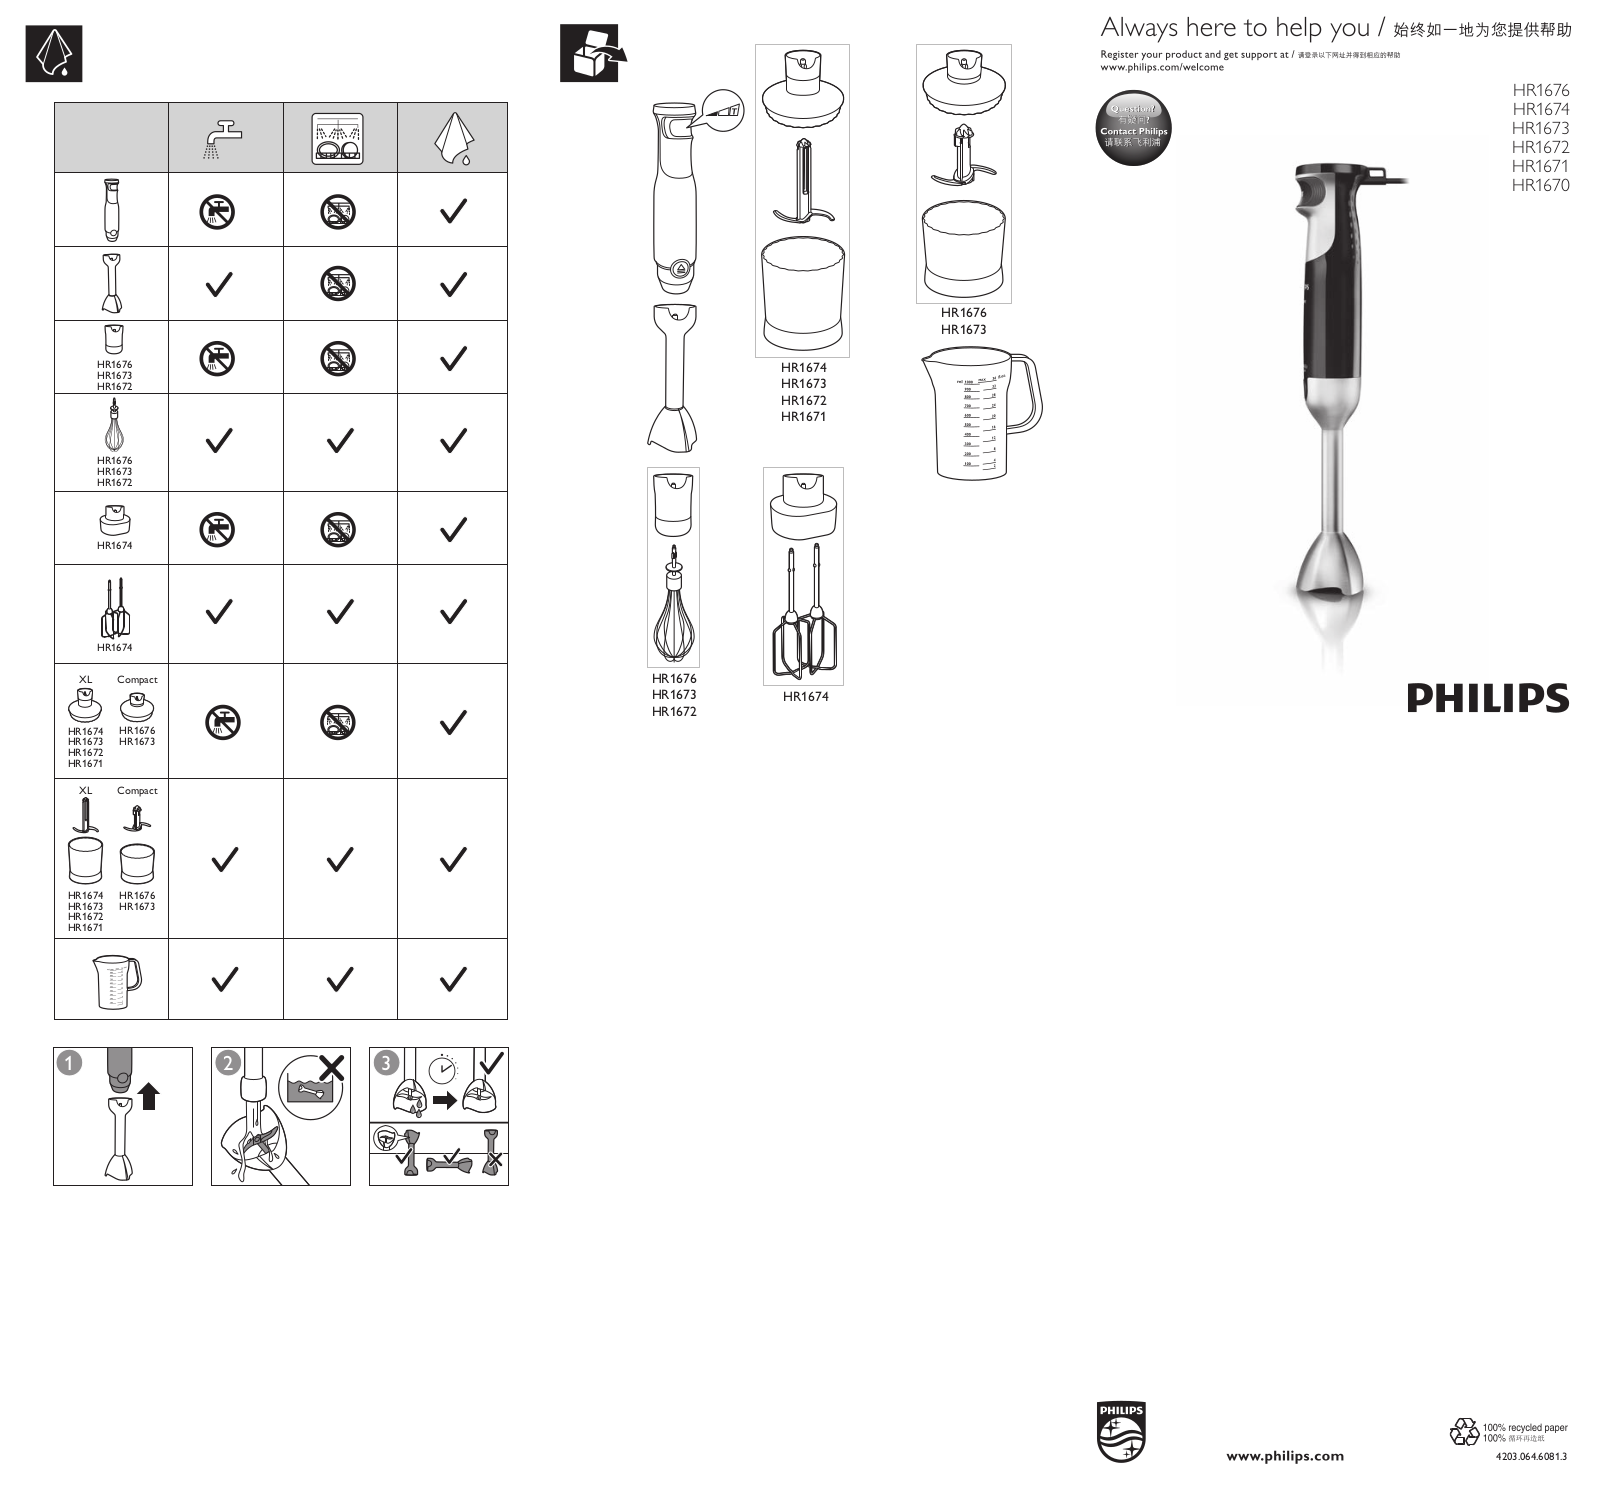 Philips HR1673, HR1672, HR1676, HR1670, HR1671 User Manual